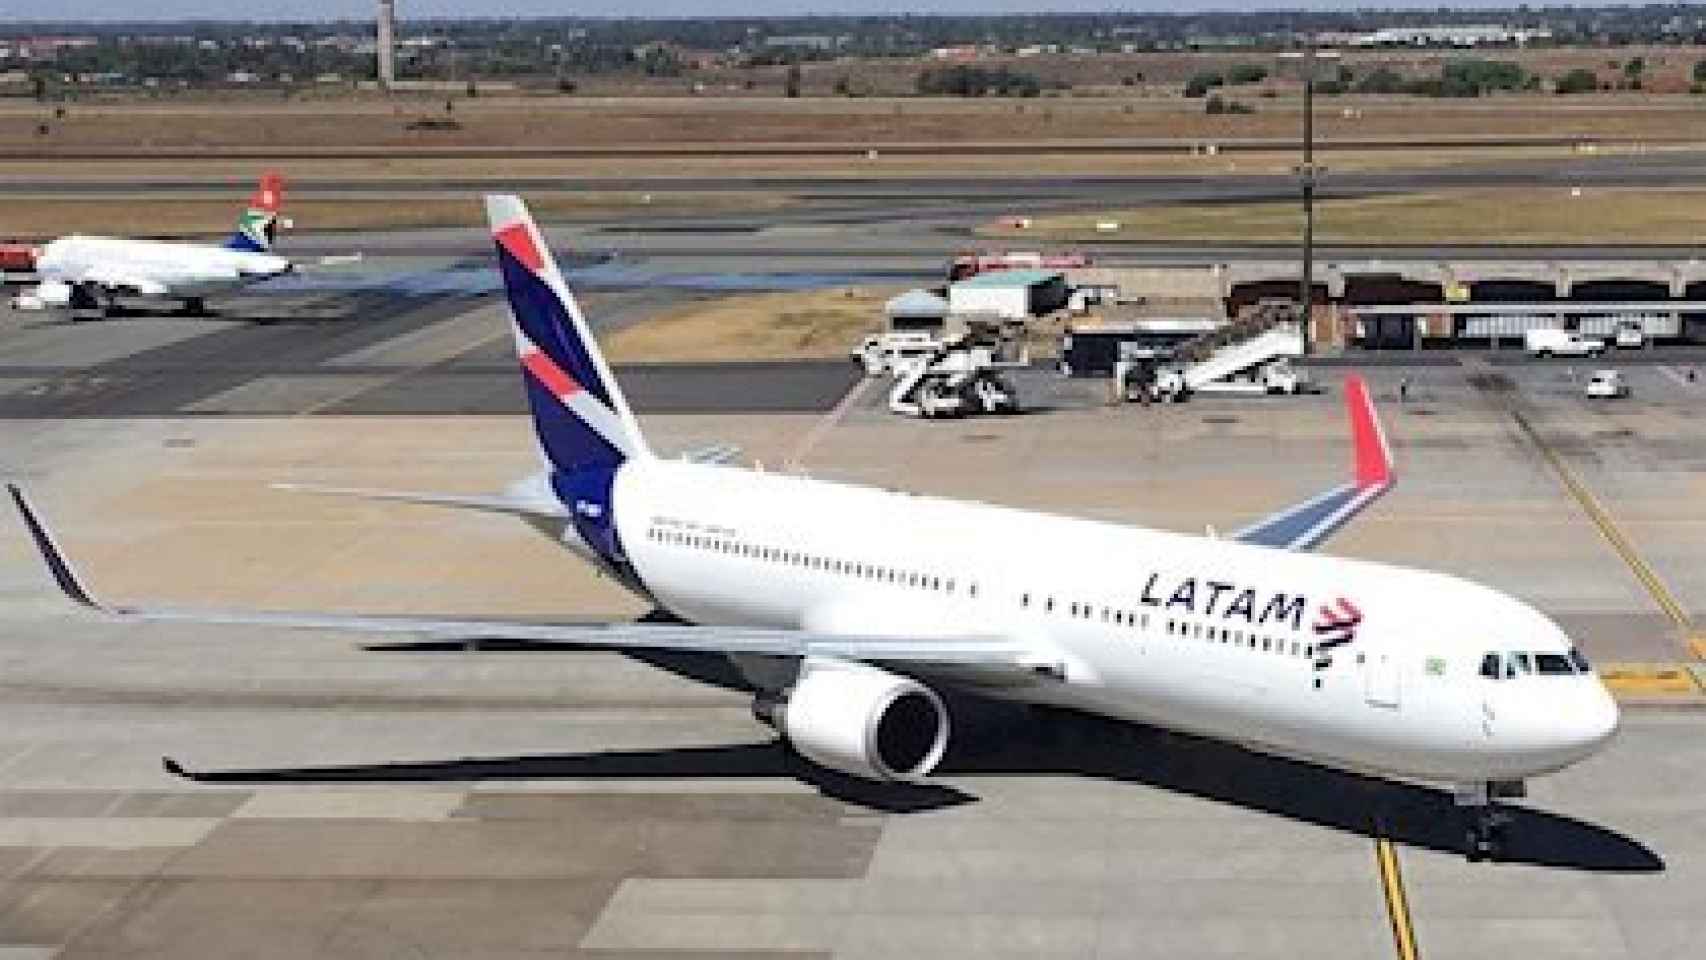 La aerolínea Latam se declara en bancarrota en EEUU por el Covid